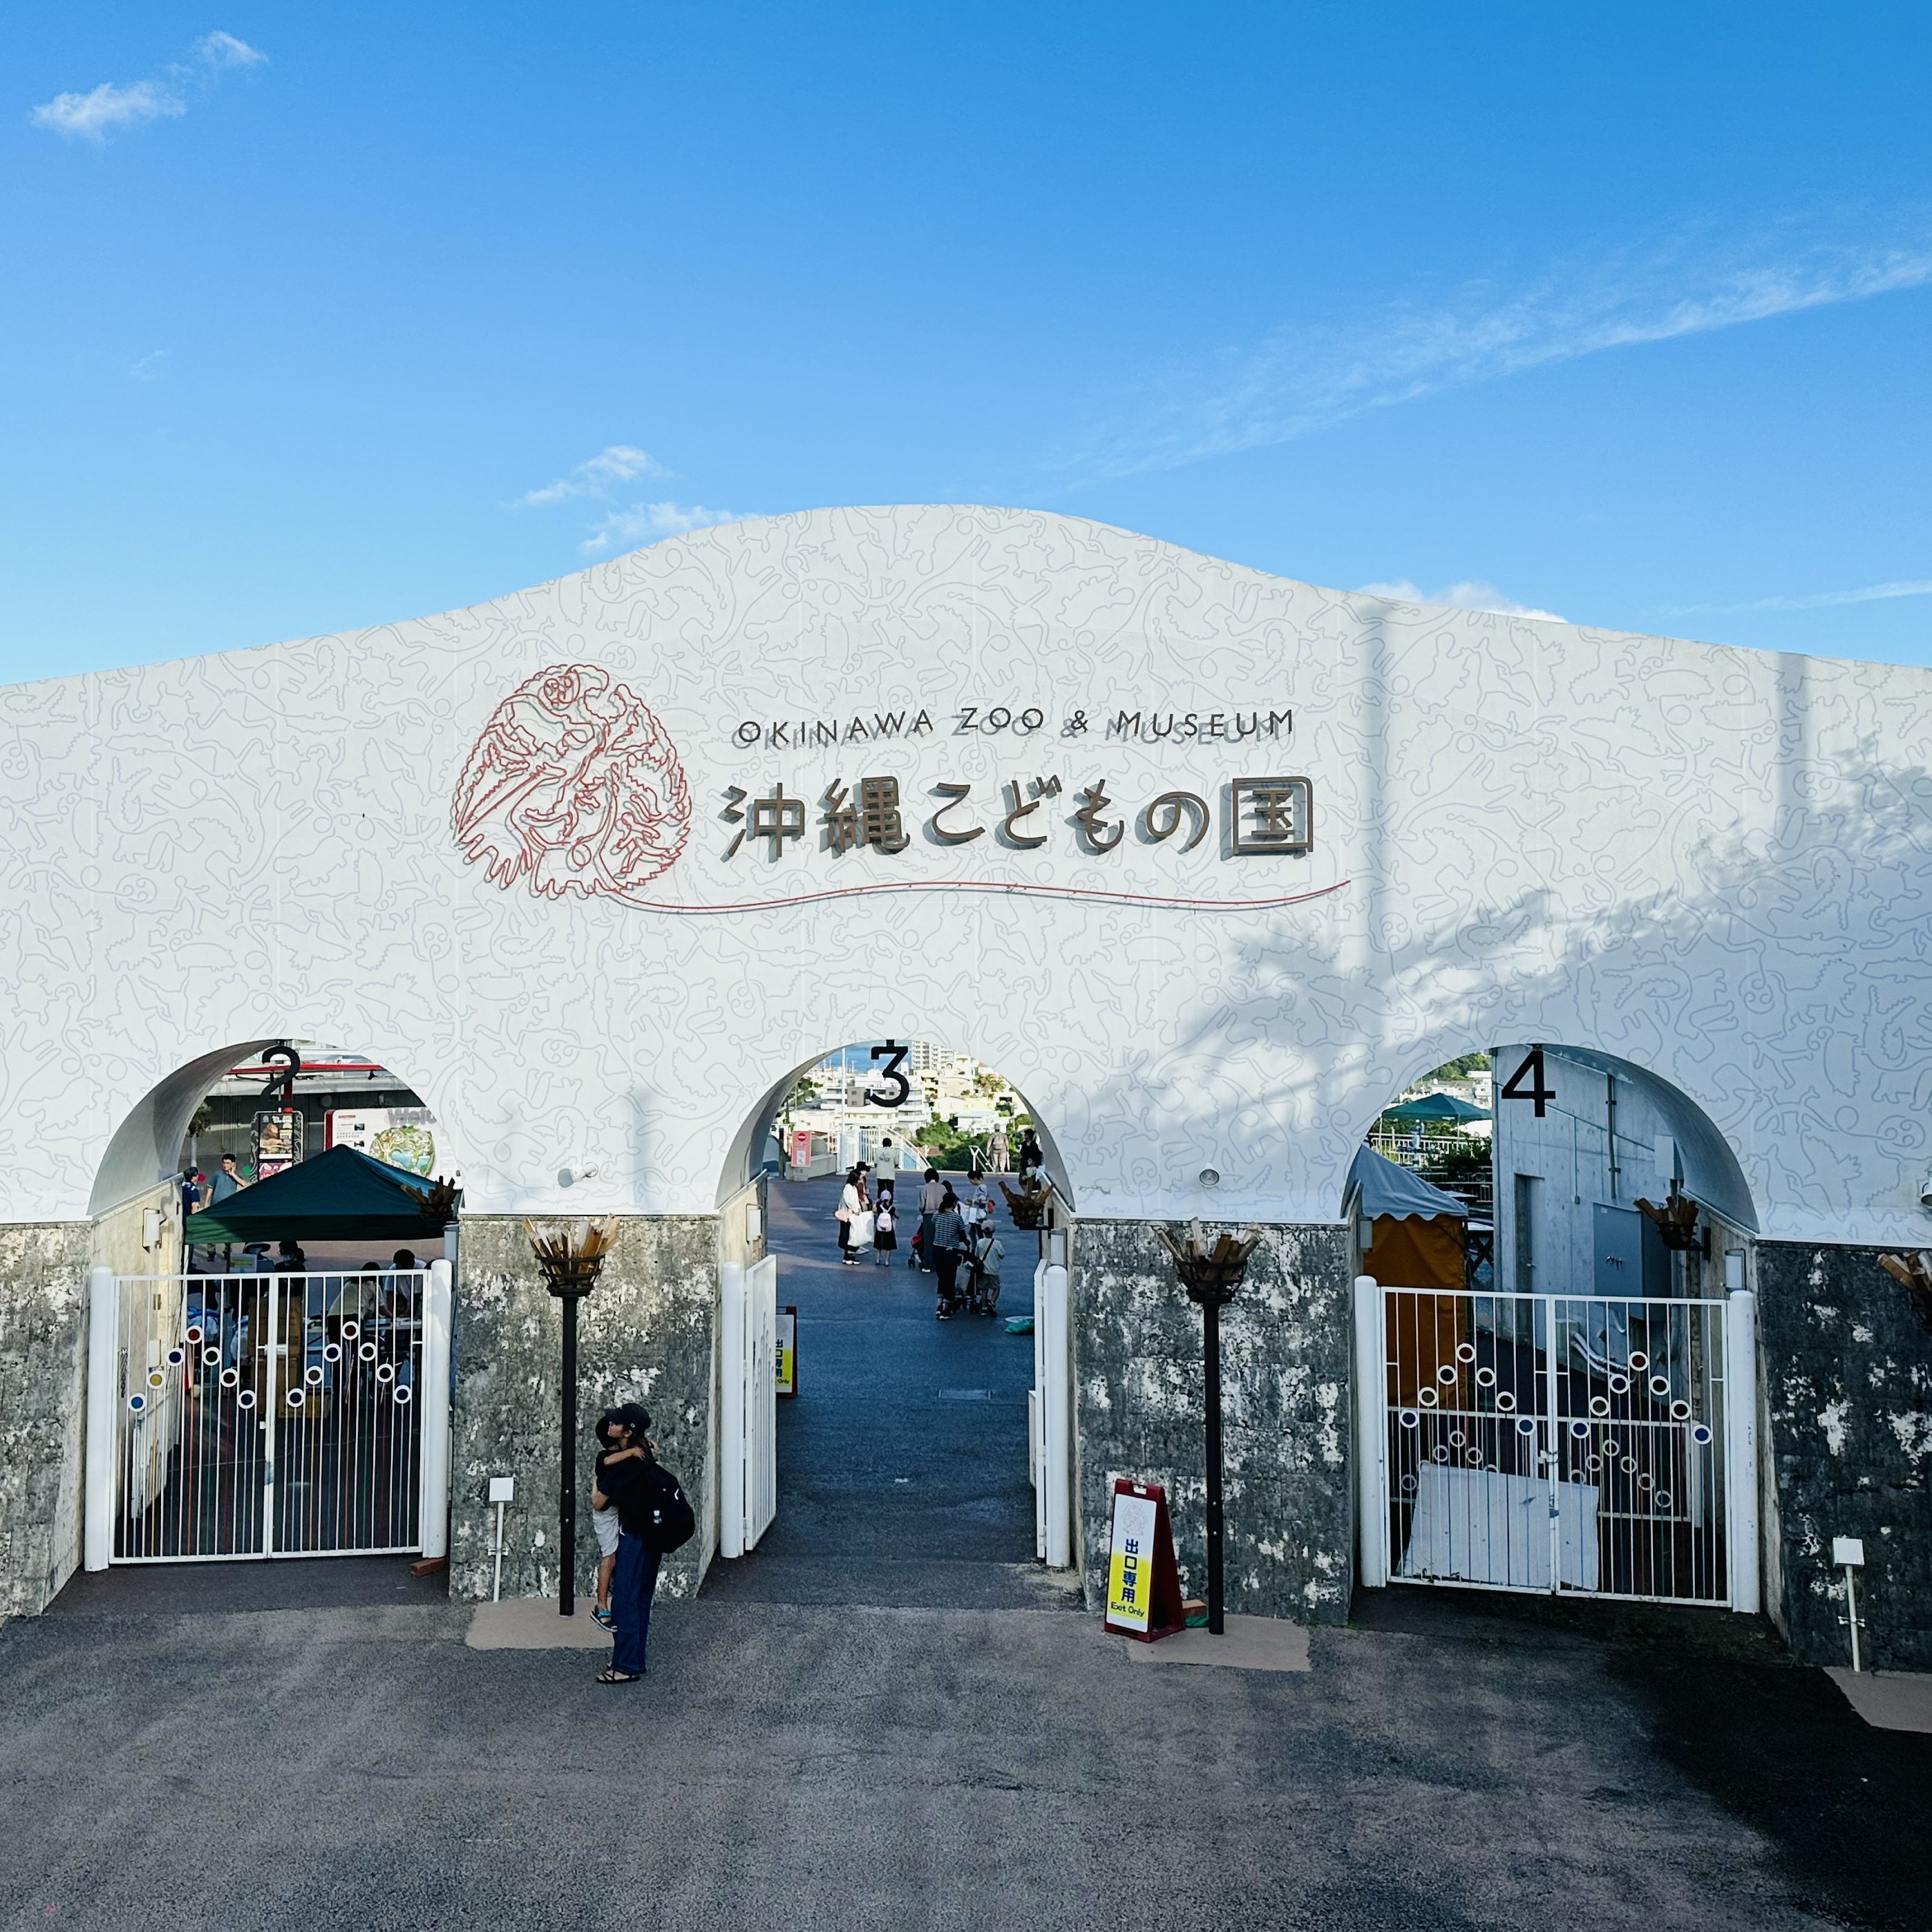 冲绳儿童王国 -集动物园与博物馆于一身